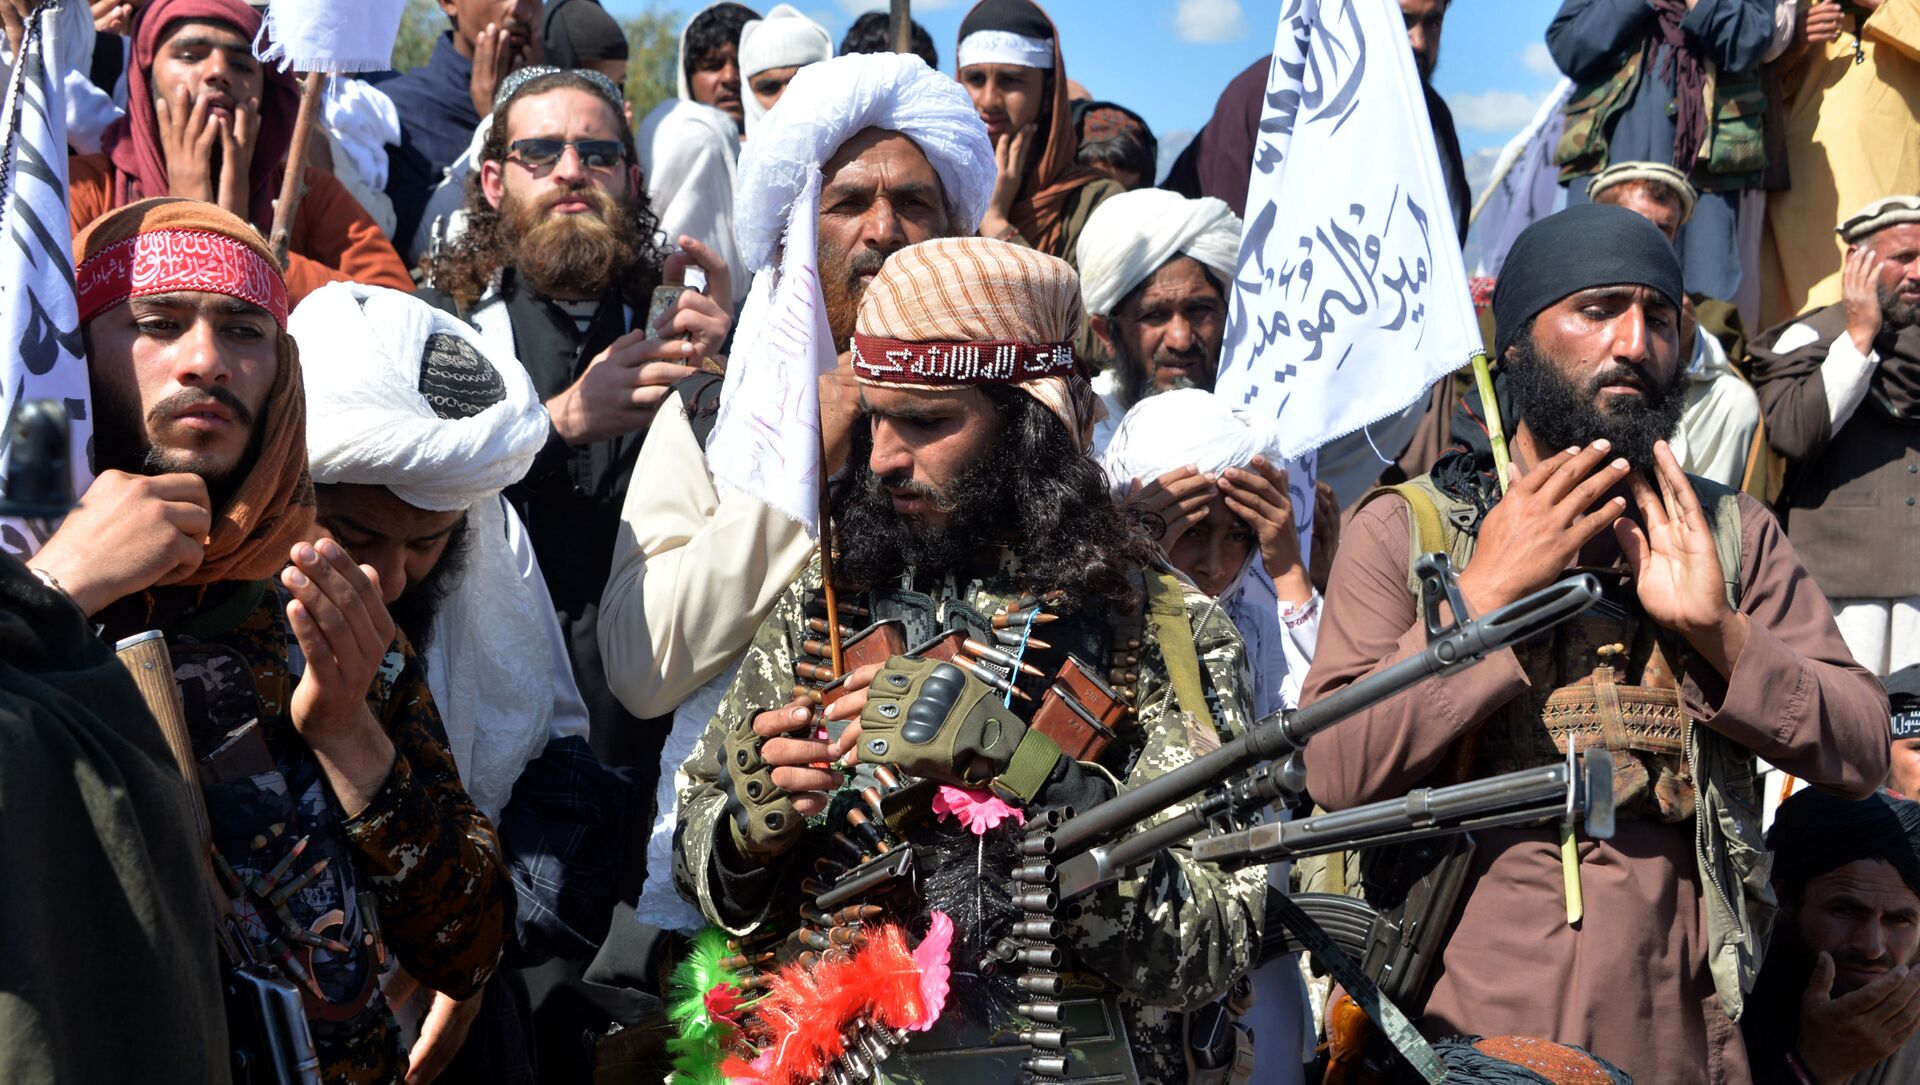 Các chiến binh Taliban Afghanistan và dân làng tham dự một cuộc tụ họp khi họ ăn mừng thỏa thuận hòa bình và chiến thắng của họ trong cuộc xung đột Afghanistan với Mỹ ở Afghanistan, tại huyện Alingar của tỉnh Laghman vào ngày 2 tháng 3 năm 2020 - Sputnik Việt Nam, 1920, 20.08.2021